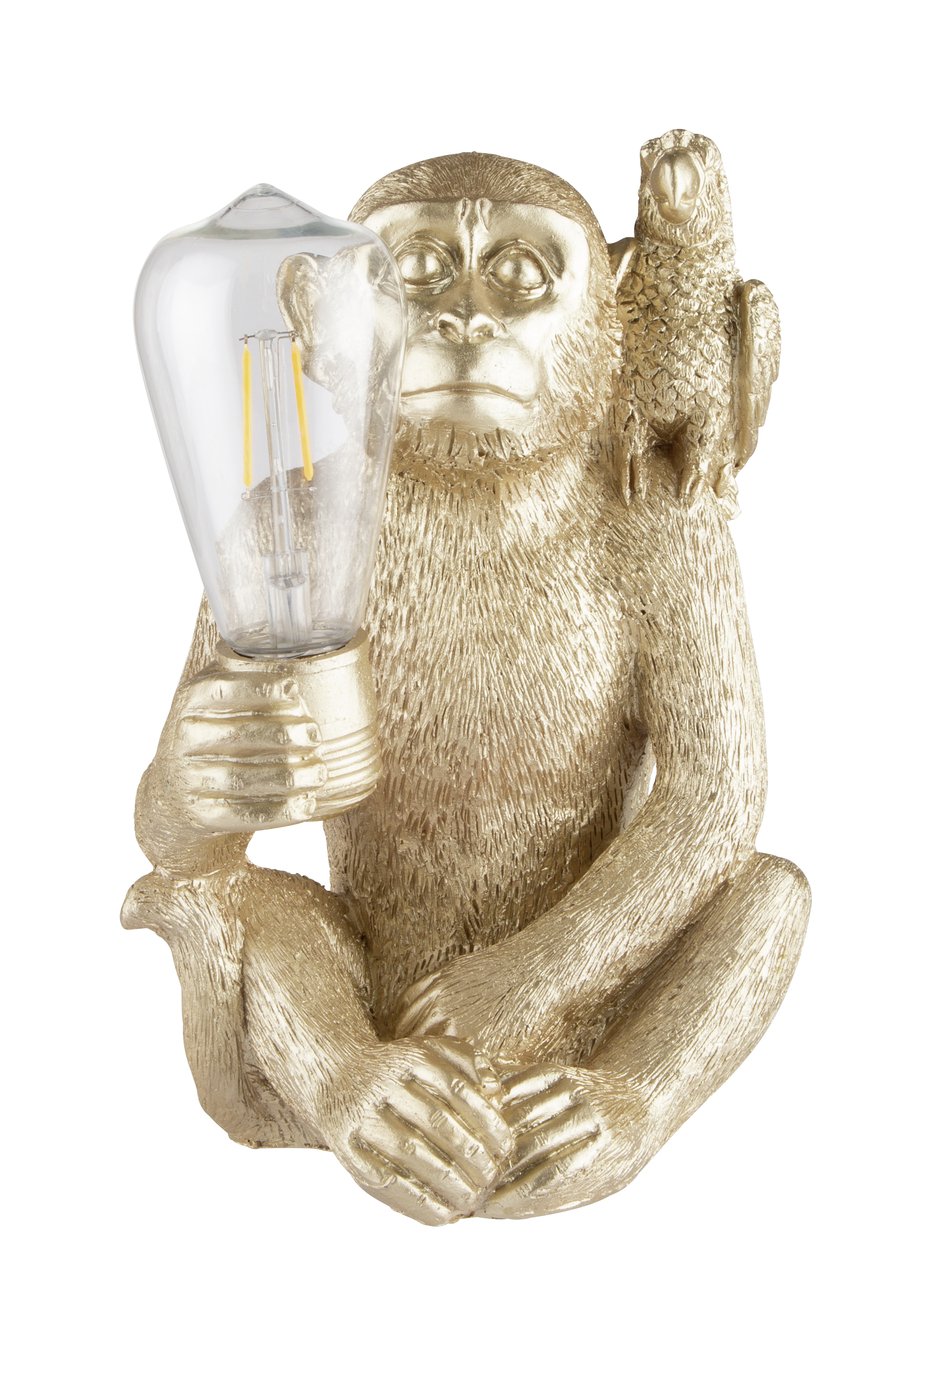 Argos Home Wilderness Solar Monkey LED Light Review